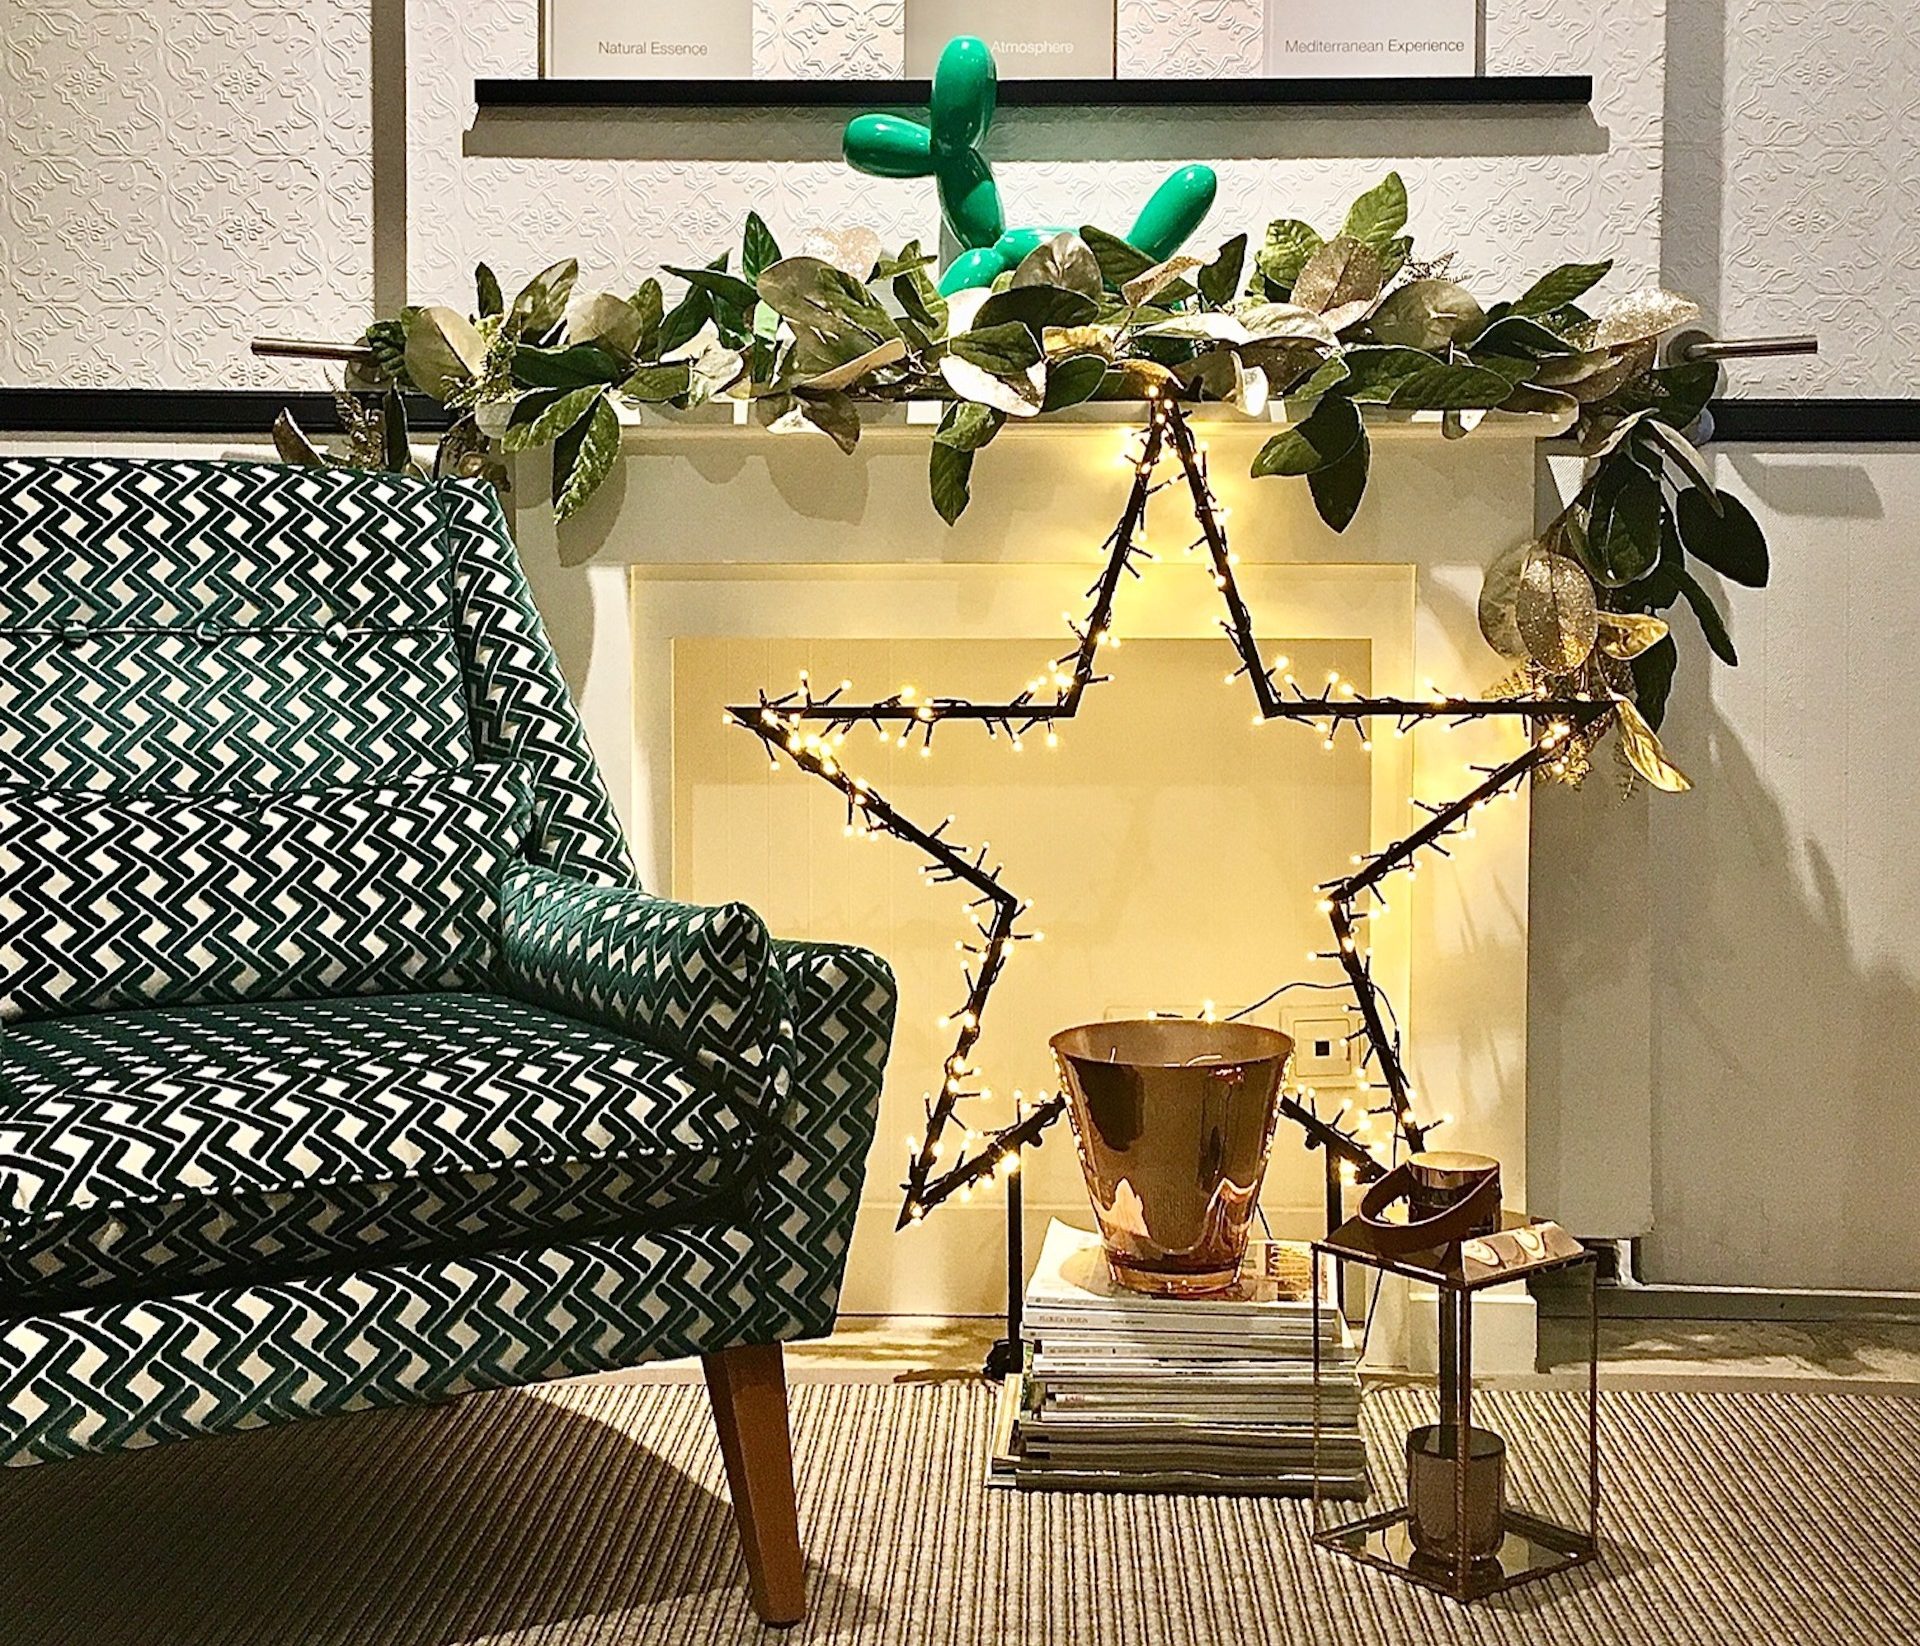 Les claus inspiracionals de la decoració nadalenca 2020, per Eva Mesa